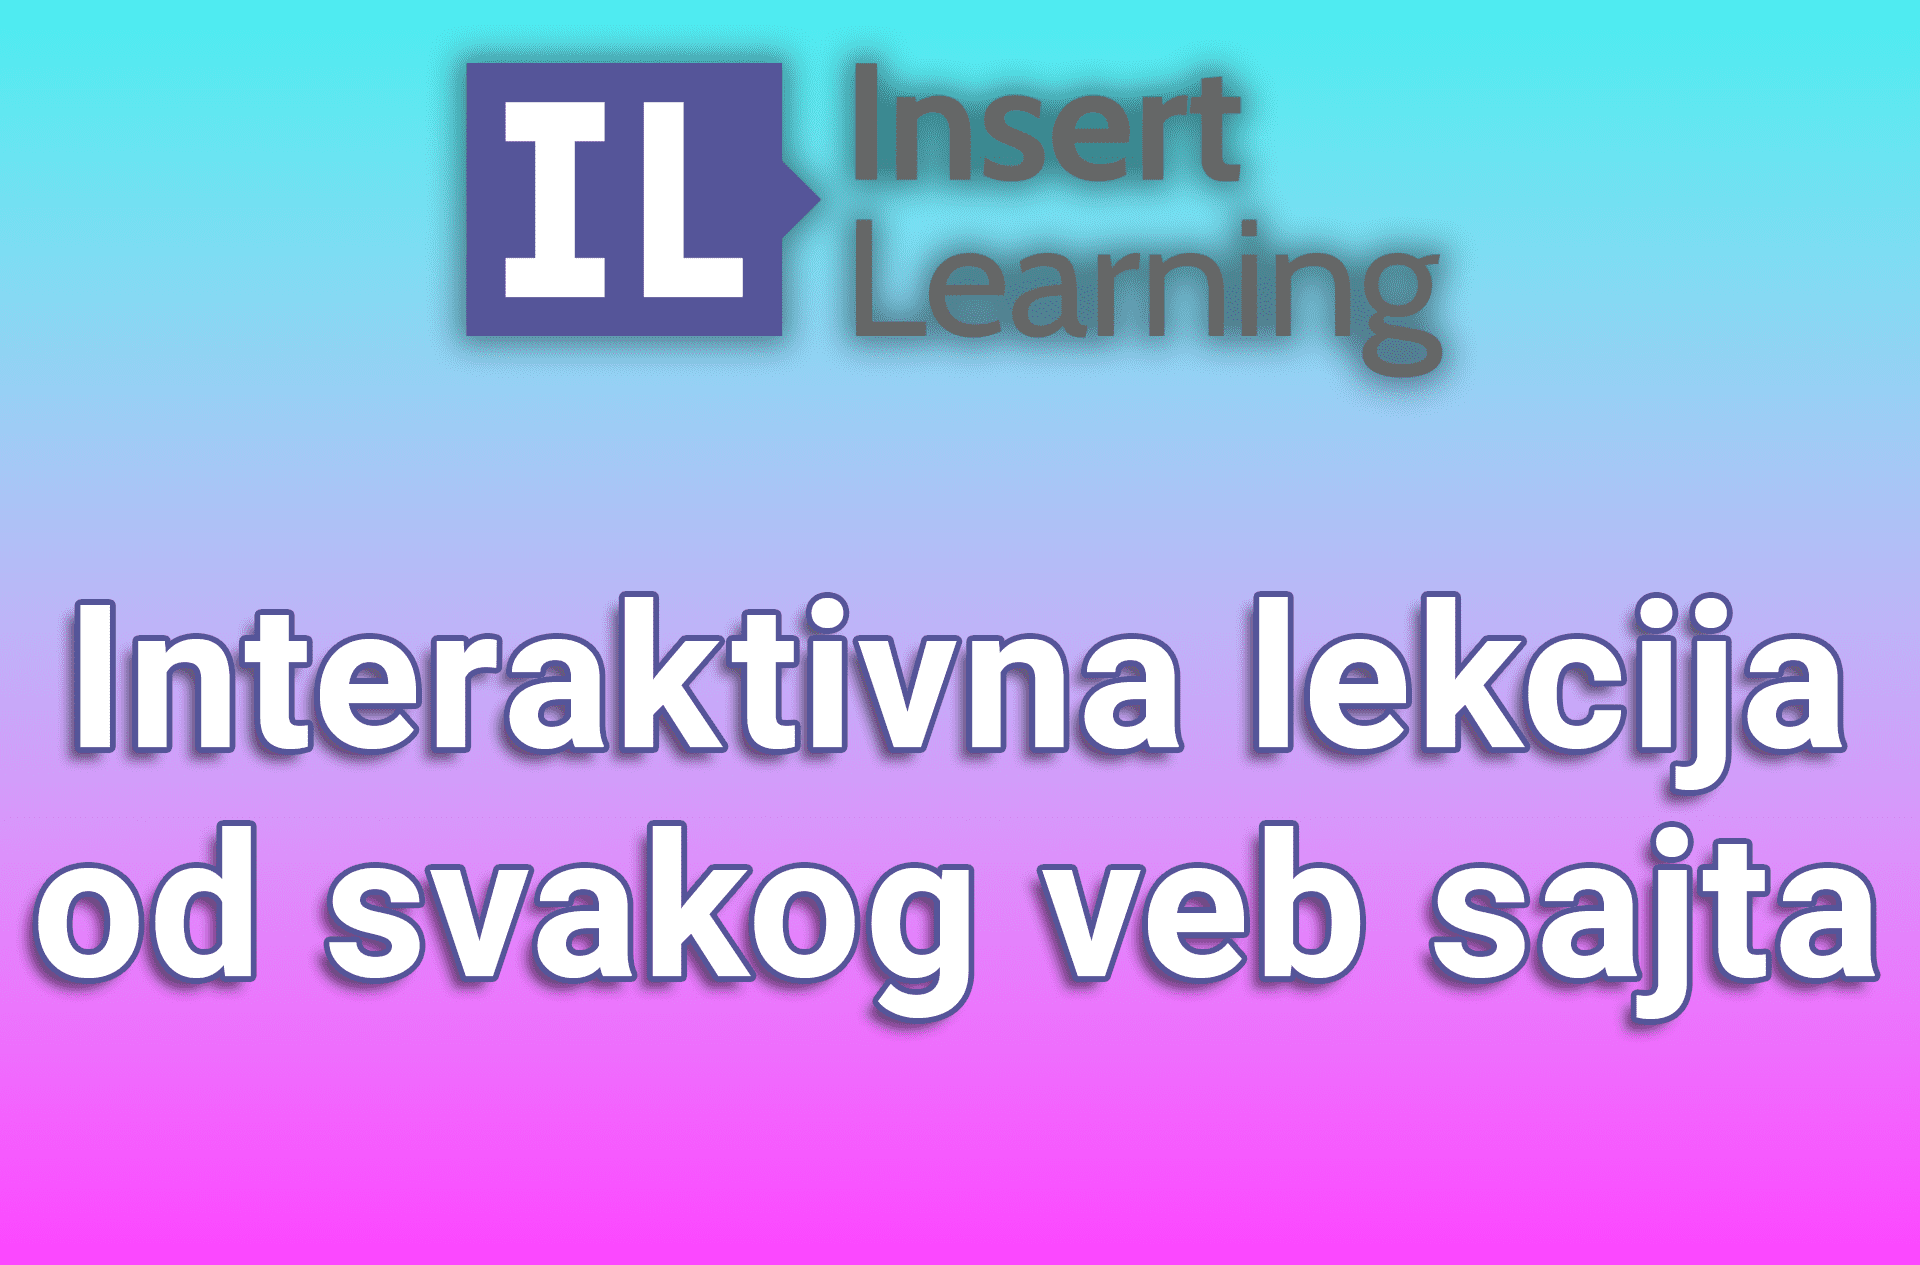 InsertLearning - Interaktivna lekcija od svakog veb sajta